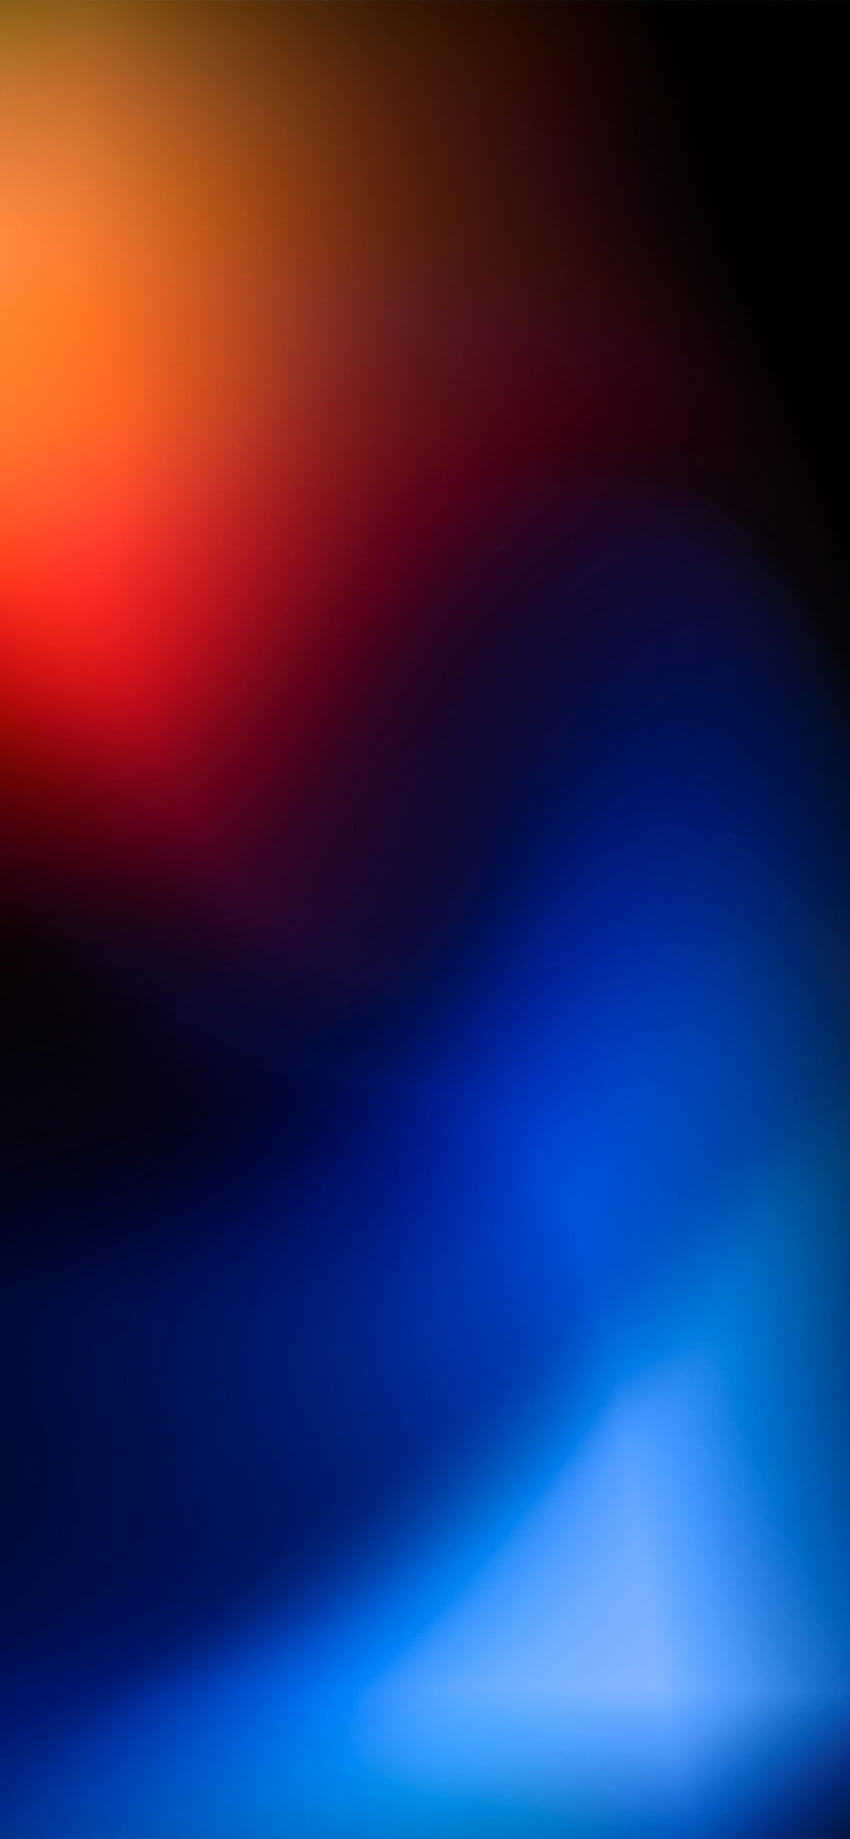 Gradien oranye ke biru dan hitam oleh @Hk3ToN di iPhone, iphone hitam dan oranye wallpaper ponsel HD